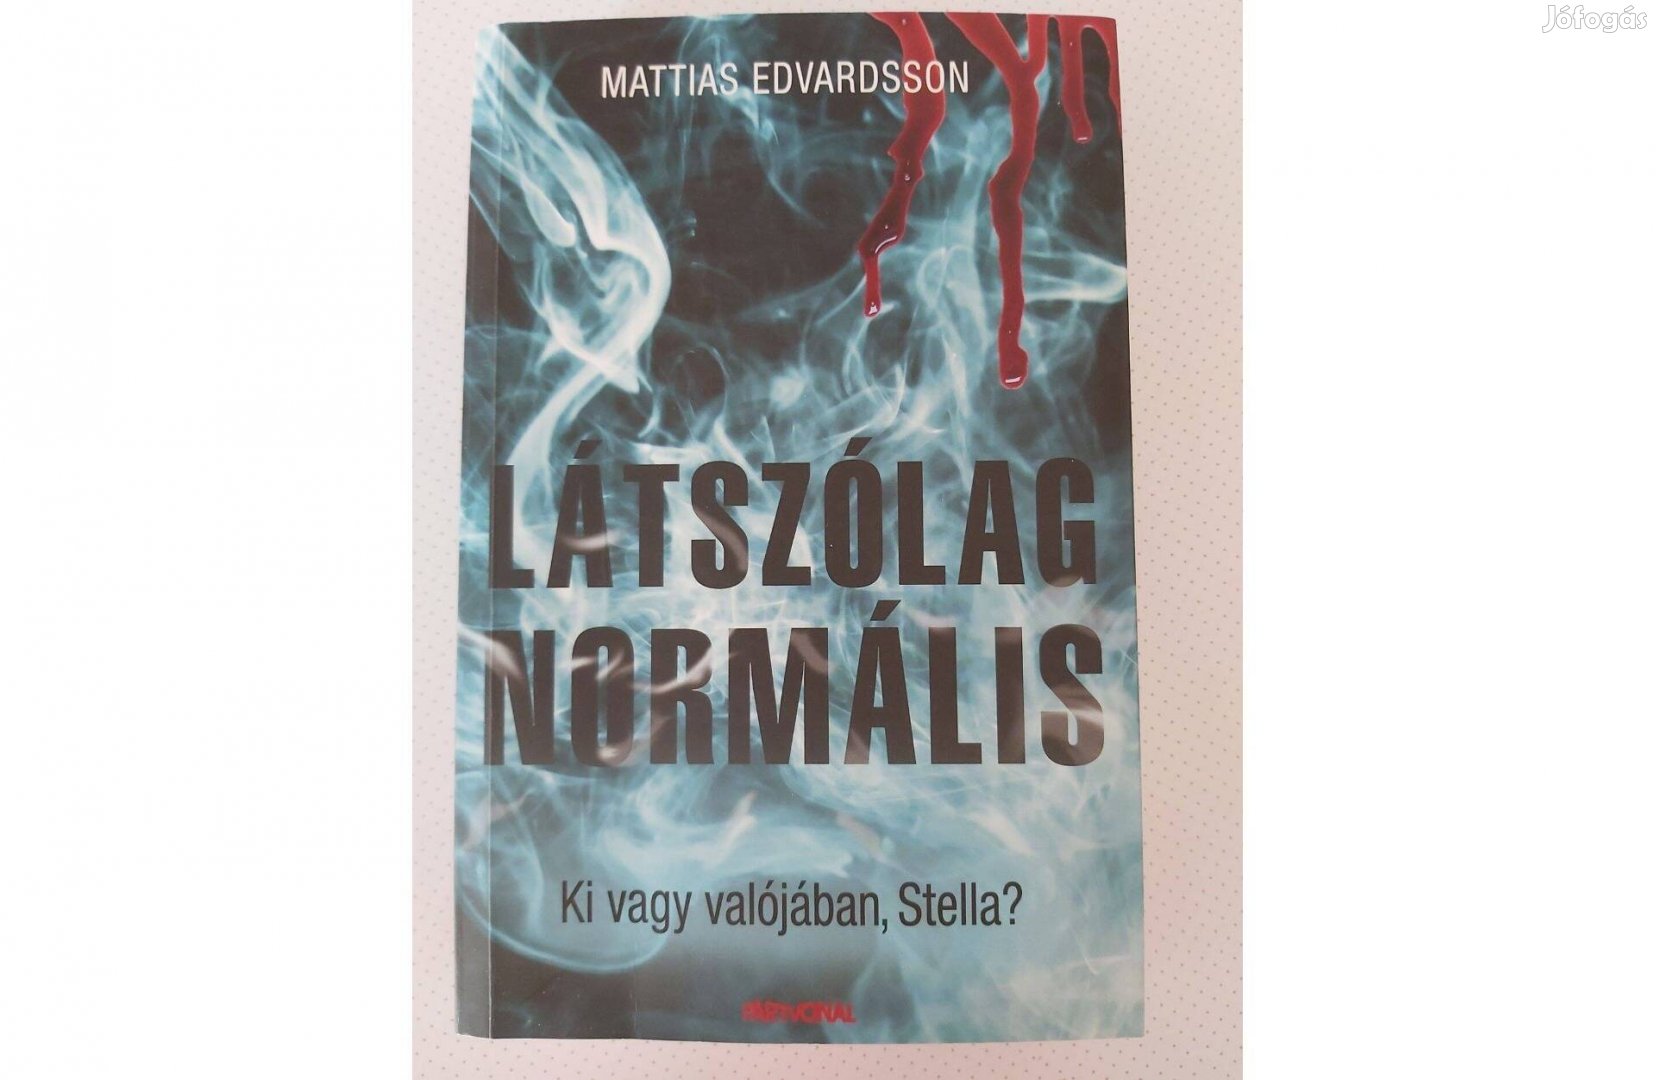 Mattias Edvardsson: Látszólag normális